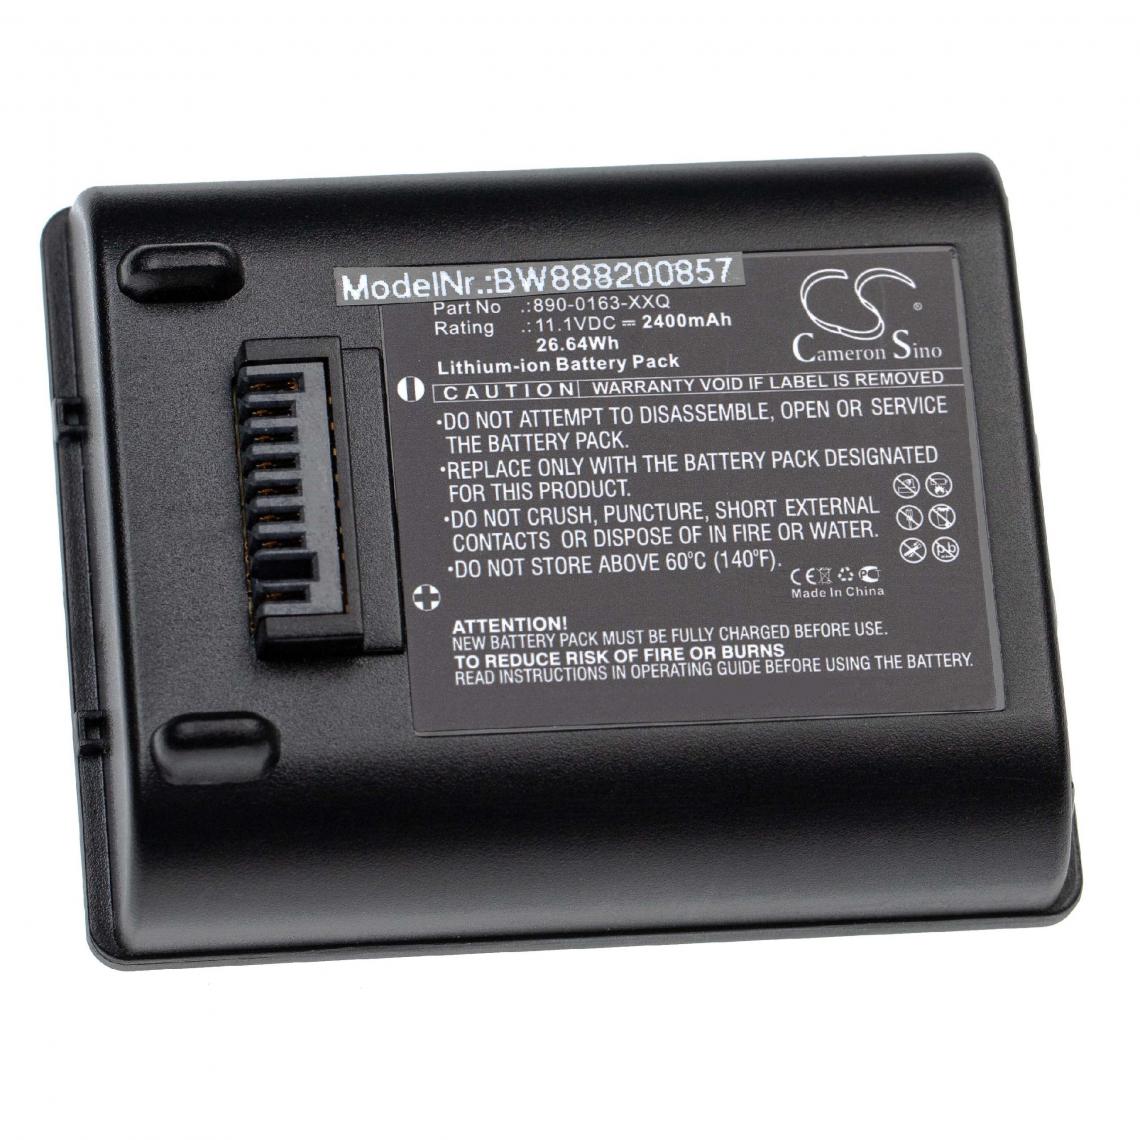 Vhbw - vhbw batterie remplace Trimble 890-0163, 890-0163-XXQ, 990652-004756, ACCAA-112, KLN01117 pour scanner portable handheld (2400mAh, 11.1V, Li-Ion) - Piles rechargeables